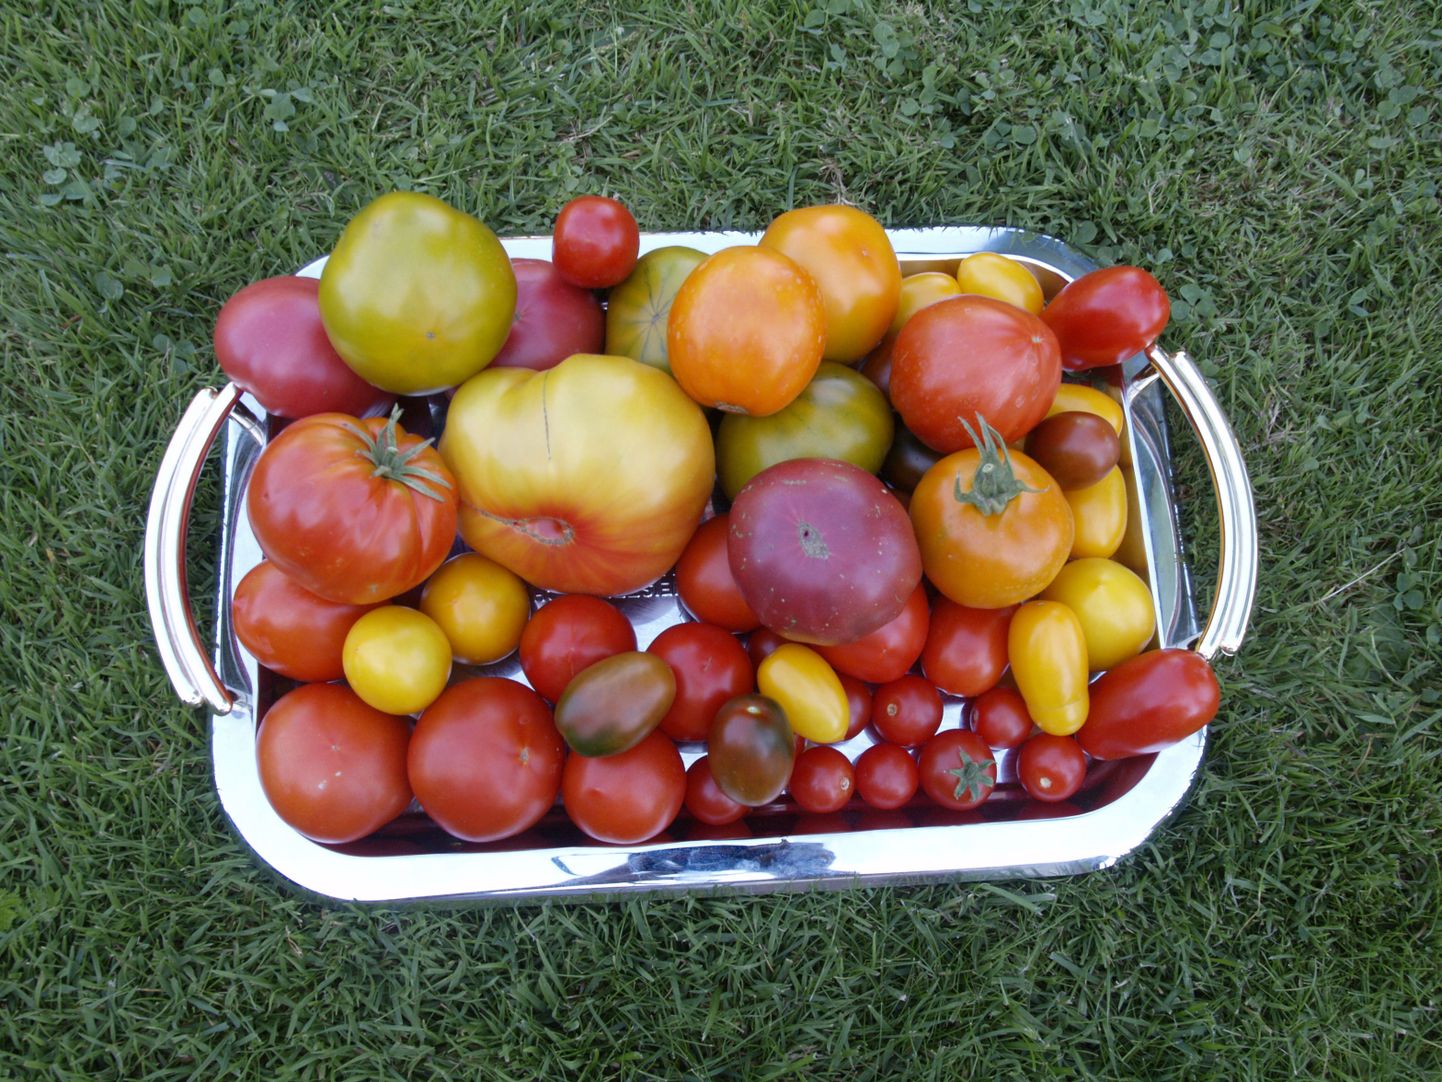 Maitsetesti jaoks on ei ole nii suurt tomativalikut tarvis, alustades piisab kolmest kuni viiest sordist.